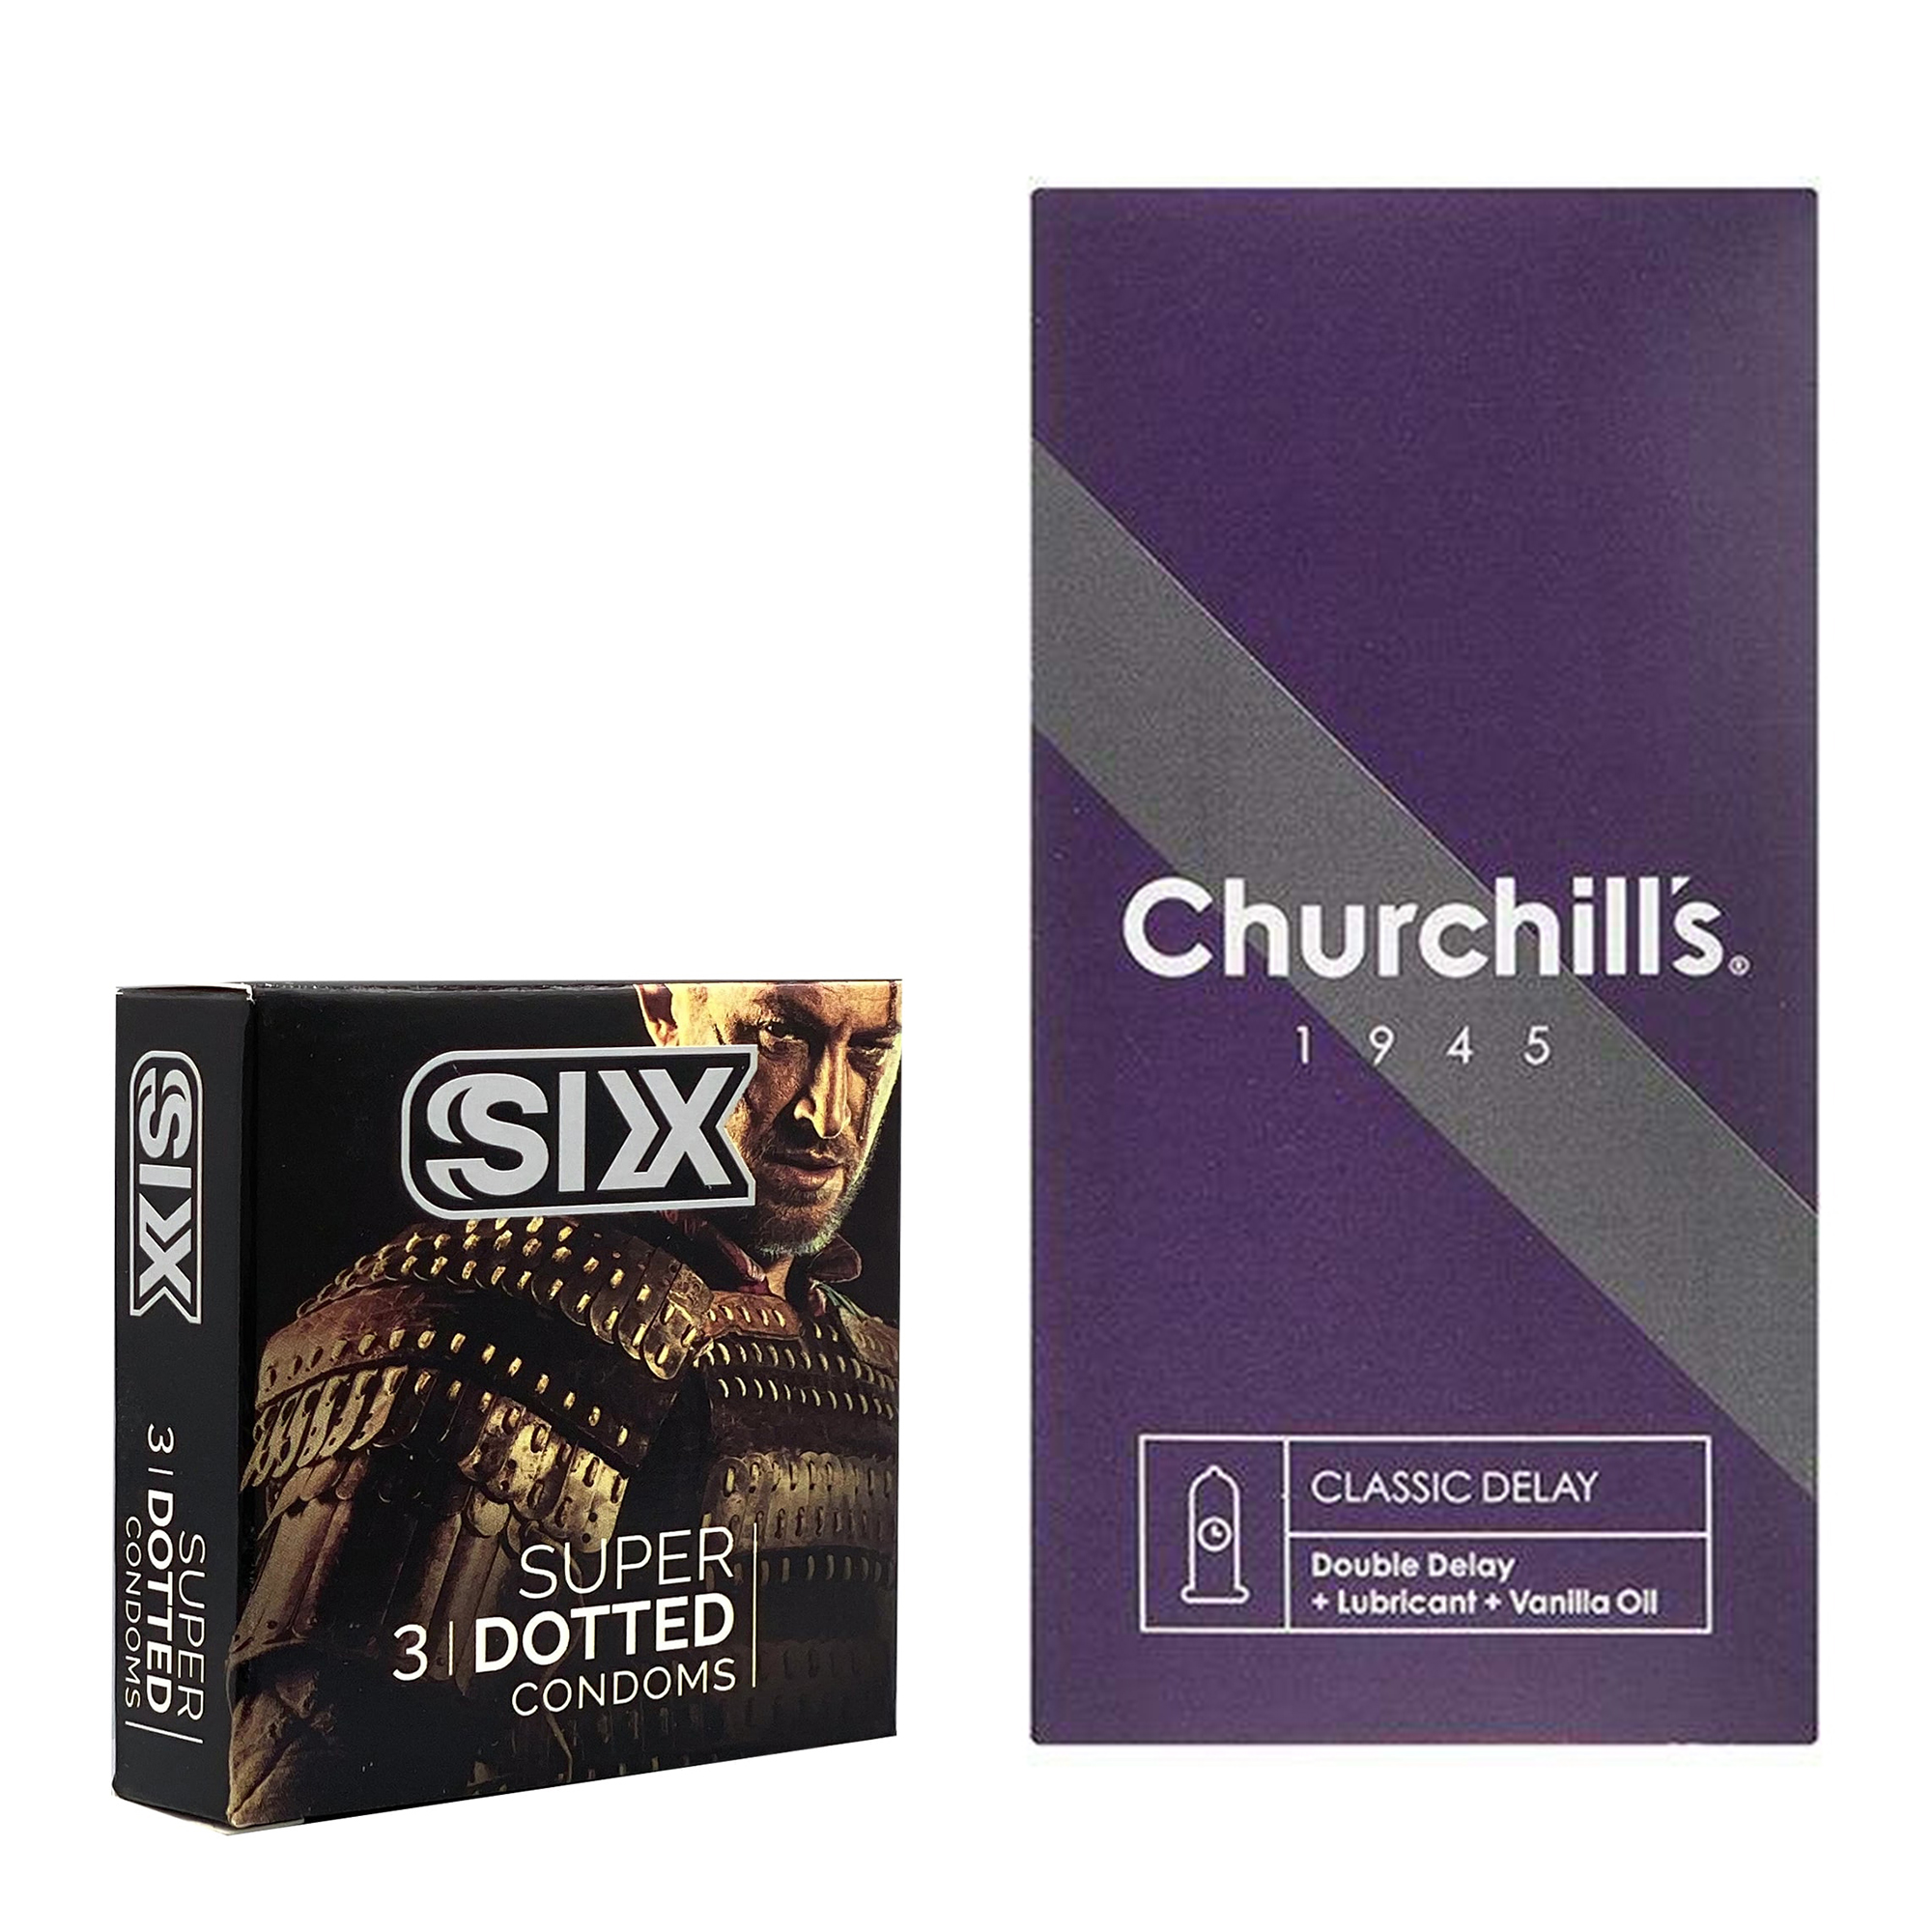 کاندوم چرچیلز مدل Classic Delay بسته 12 عددی به همراه کاندوم سیکس مدل خاردار بسته 3 عددی 